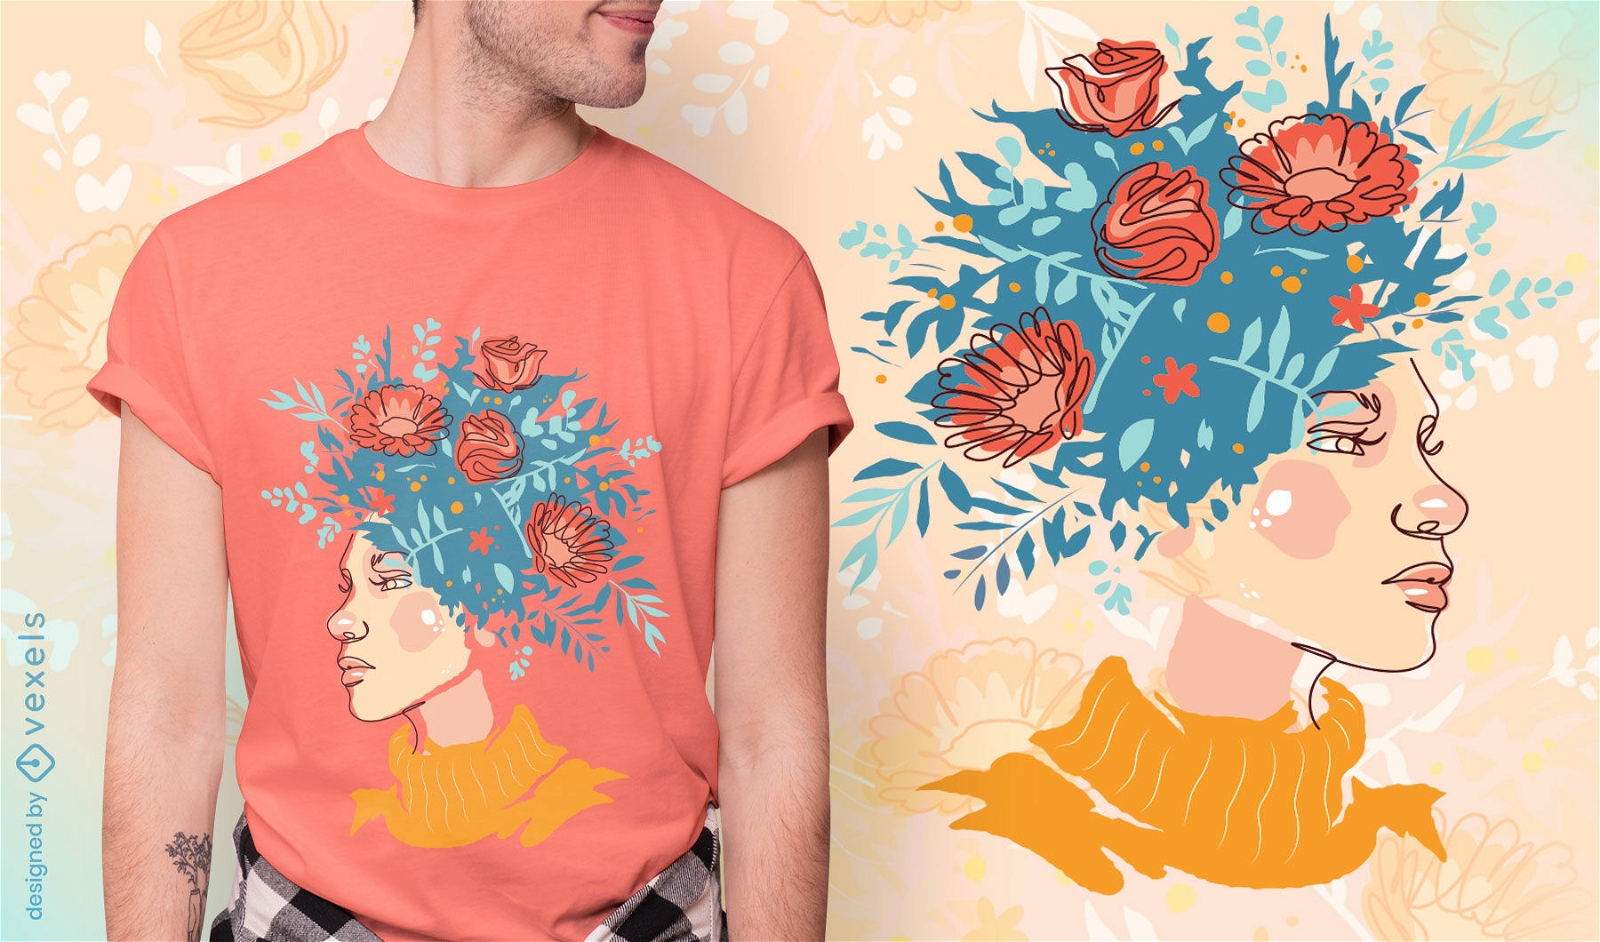 M?dchen mit Blumen im Haar-T-Shirt-Design